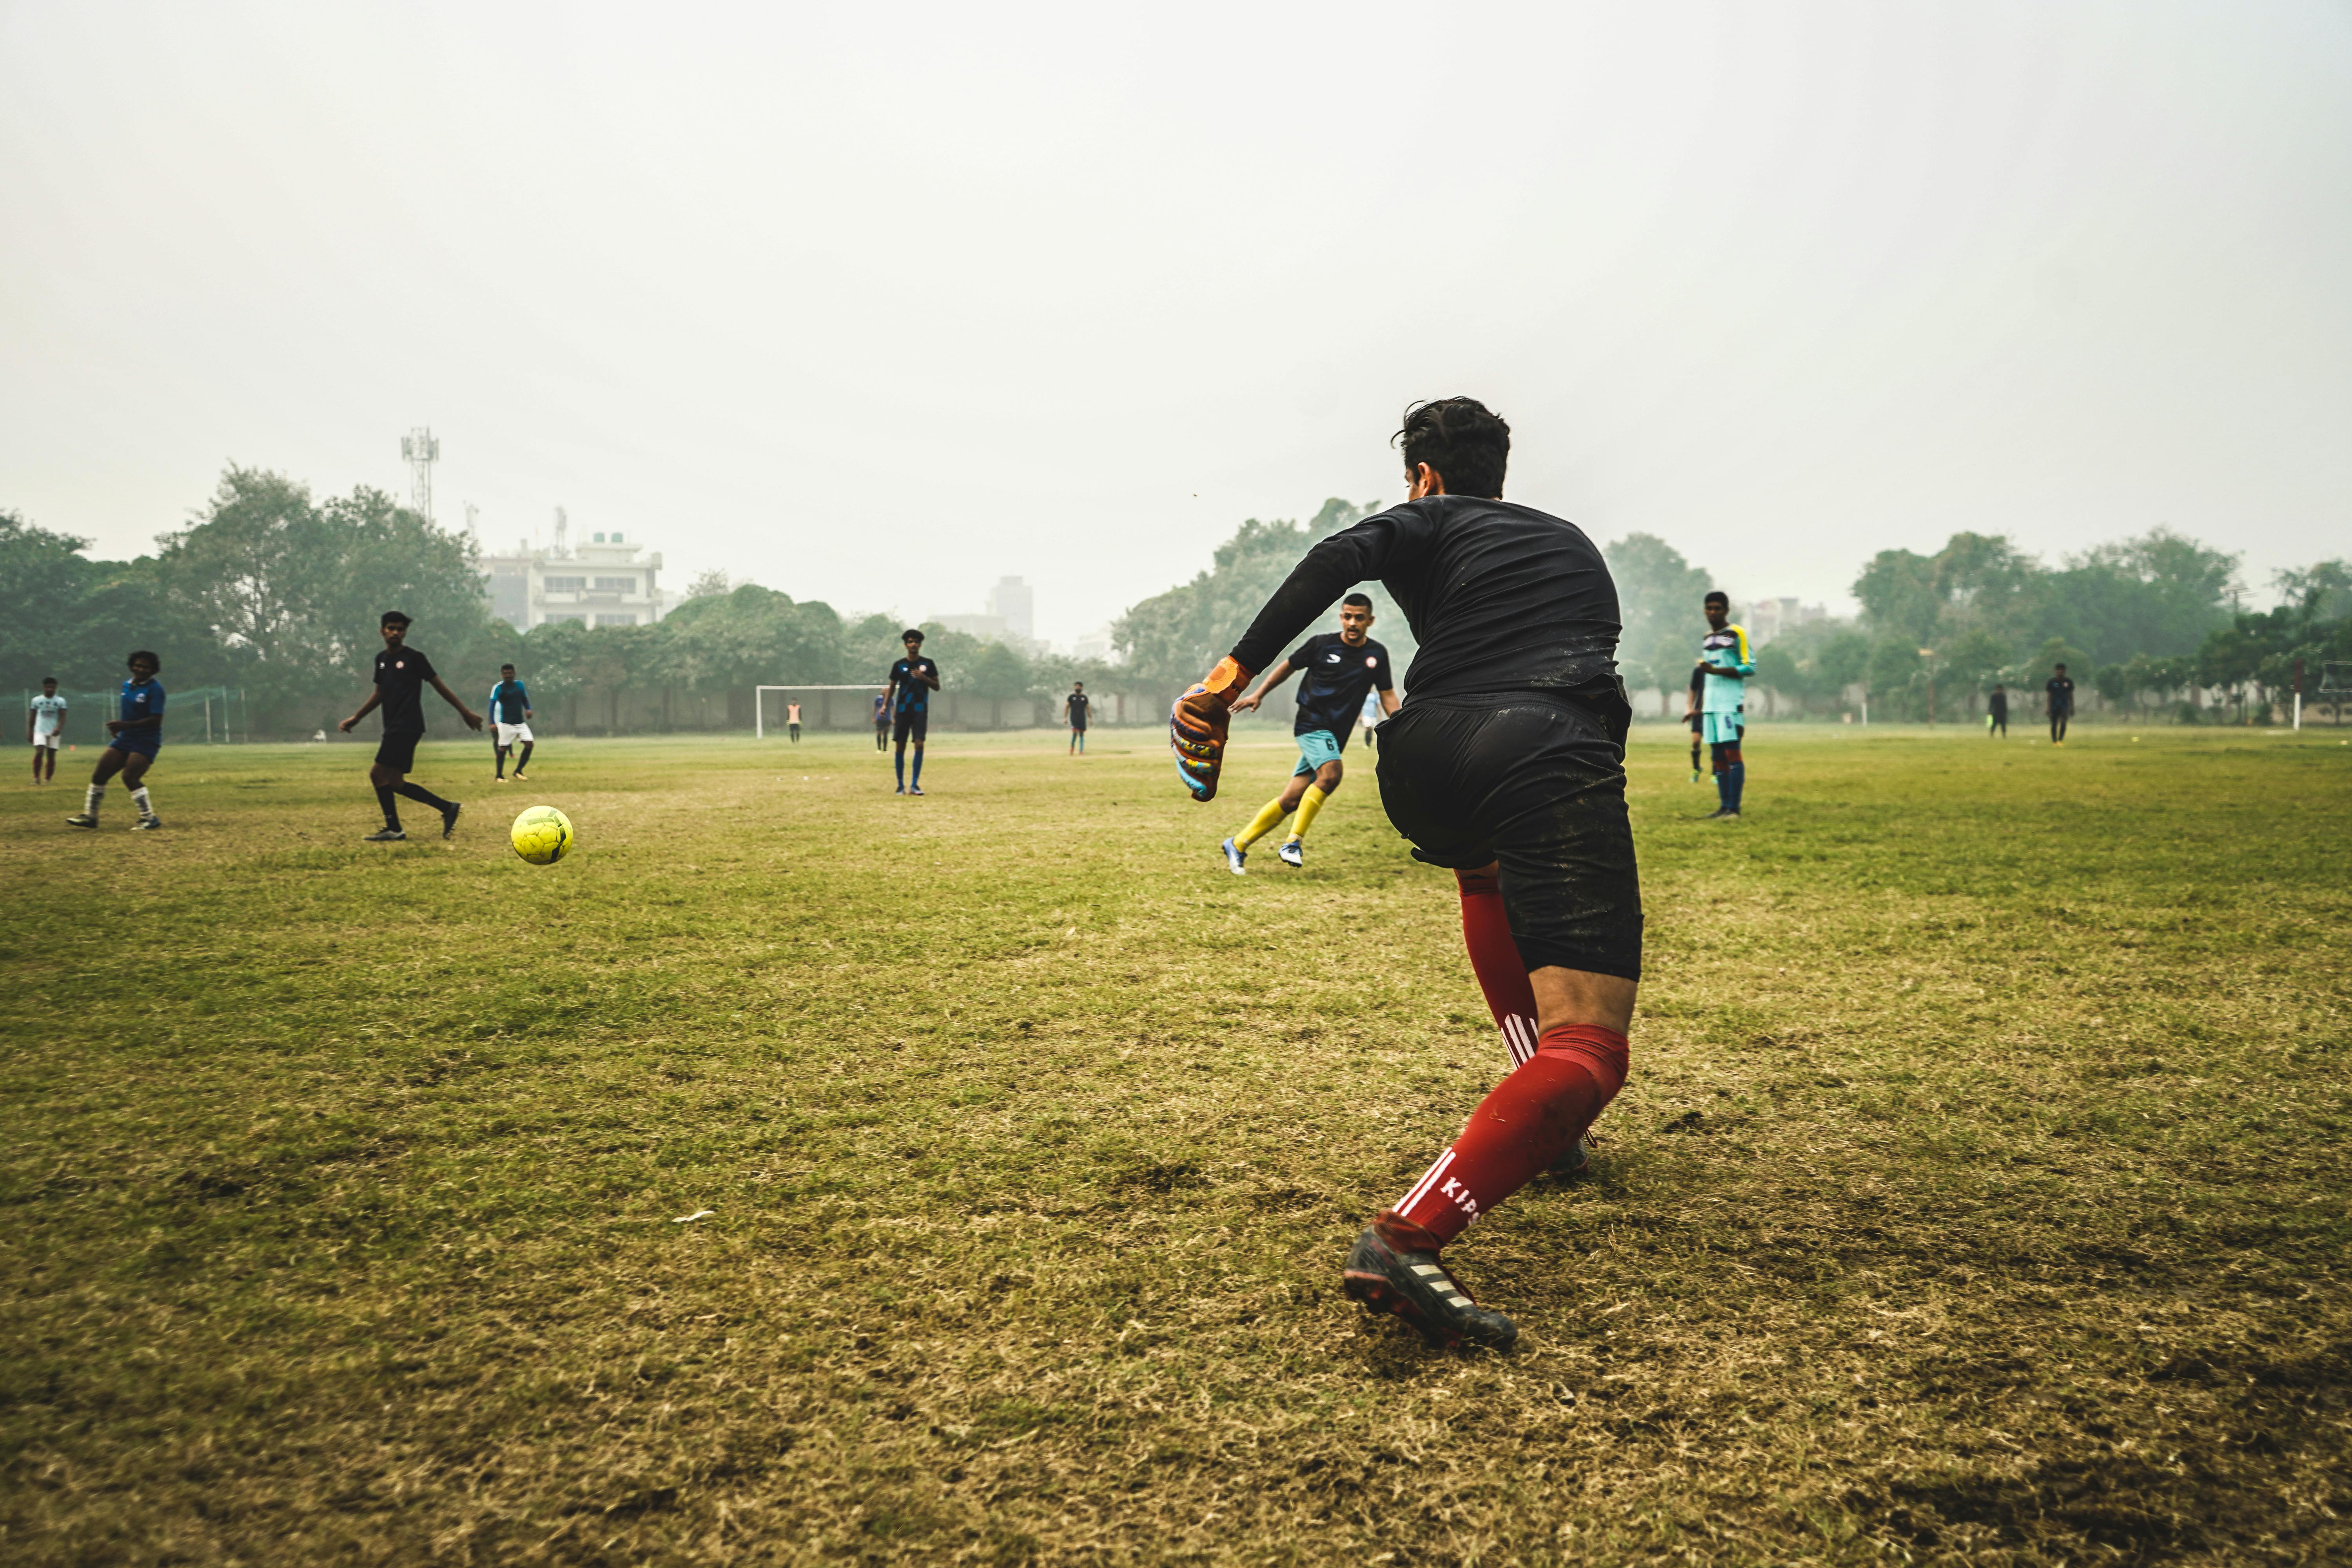 Homens Jogando Futebol No Campo De Grama Verde · Foto profissional gratuita